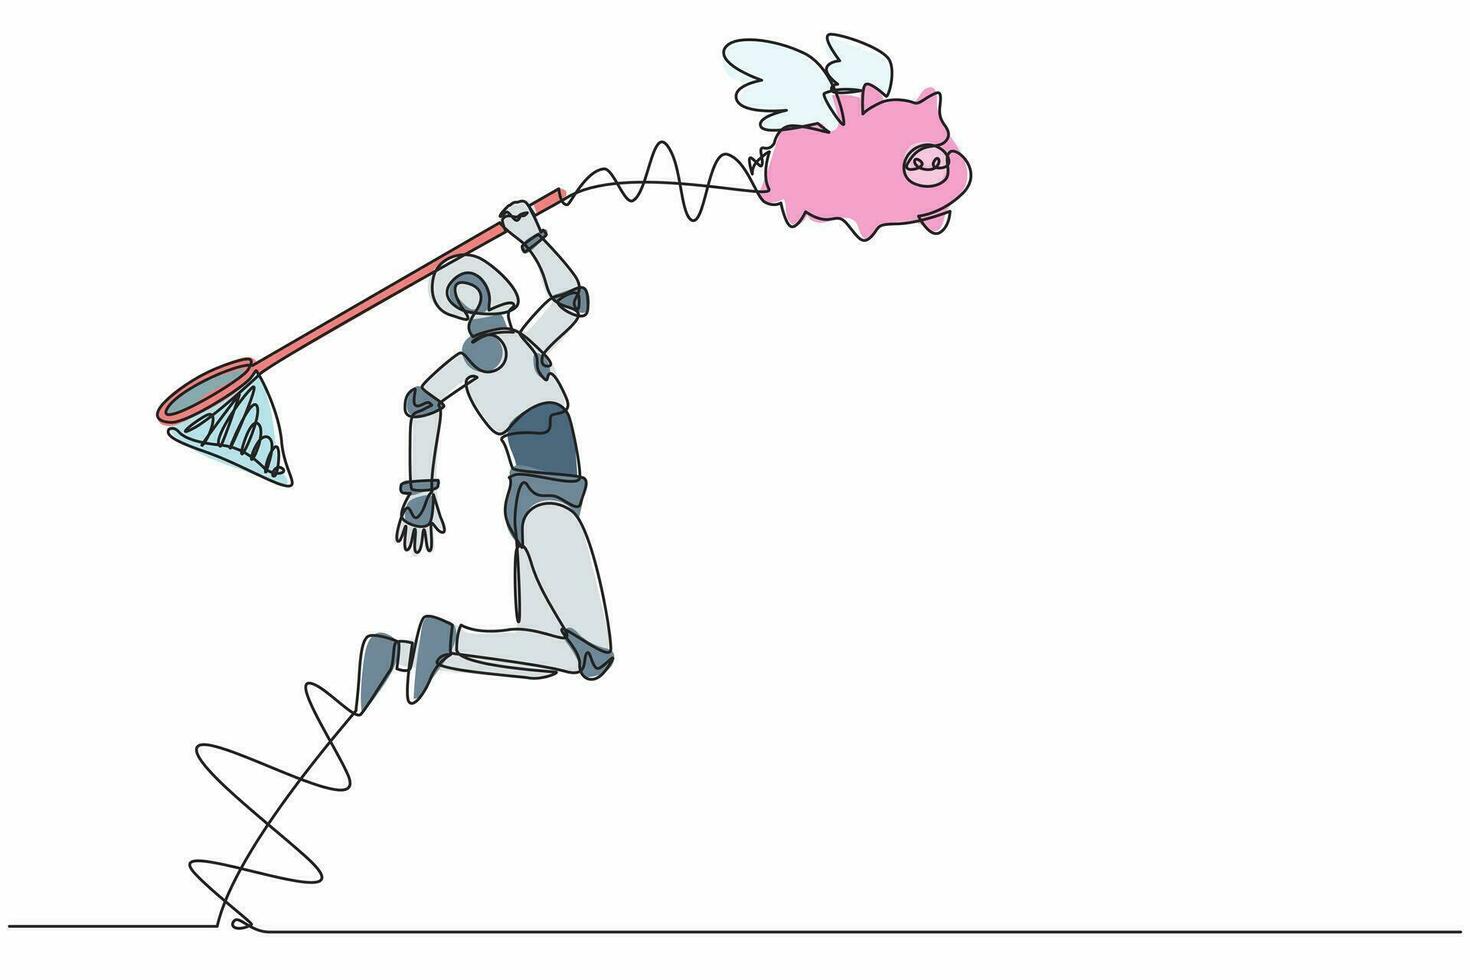 single een lijn tekening robot proberen naar vangen vliegend varkentje bank met vlinder netto. verliezende geld besparing voor tech investering. technologie ontwikkeling. doorlopend lijn ontwerp grafisch vector illustratie